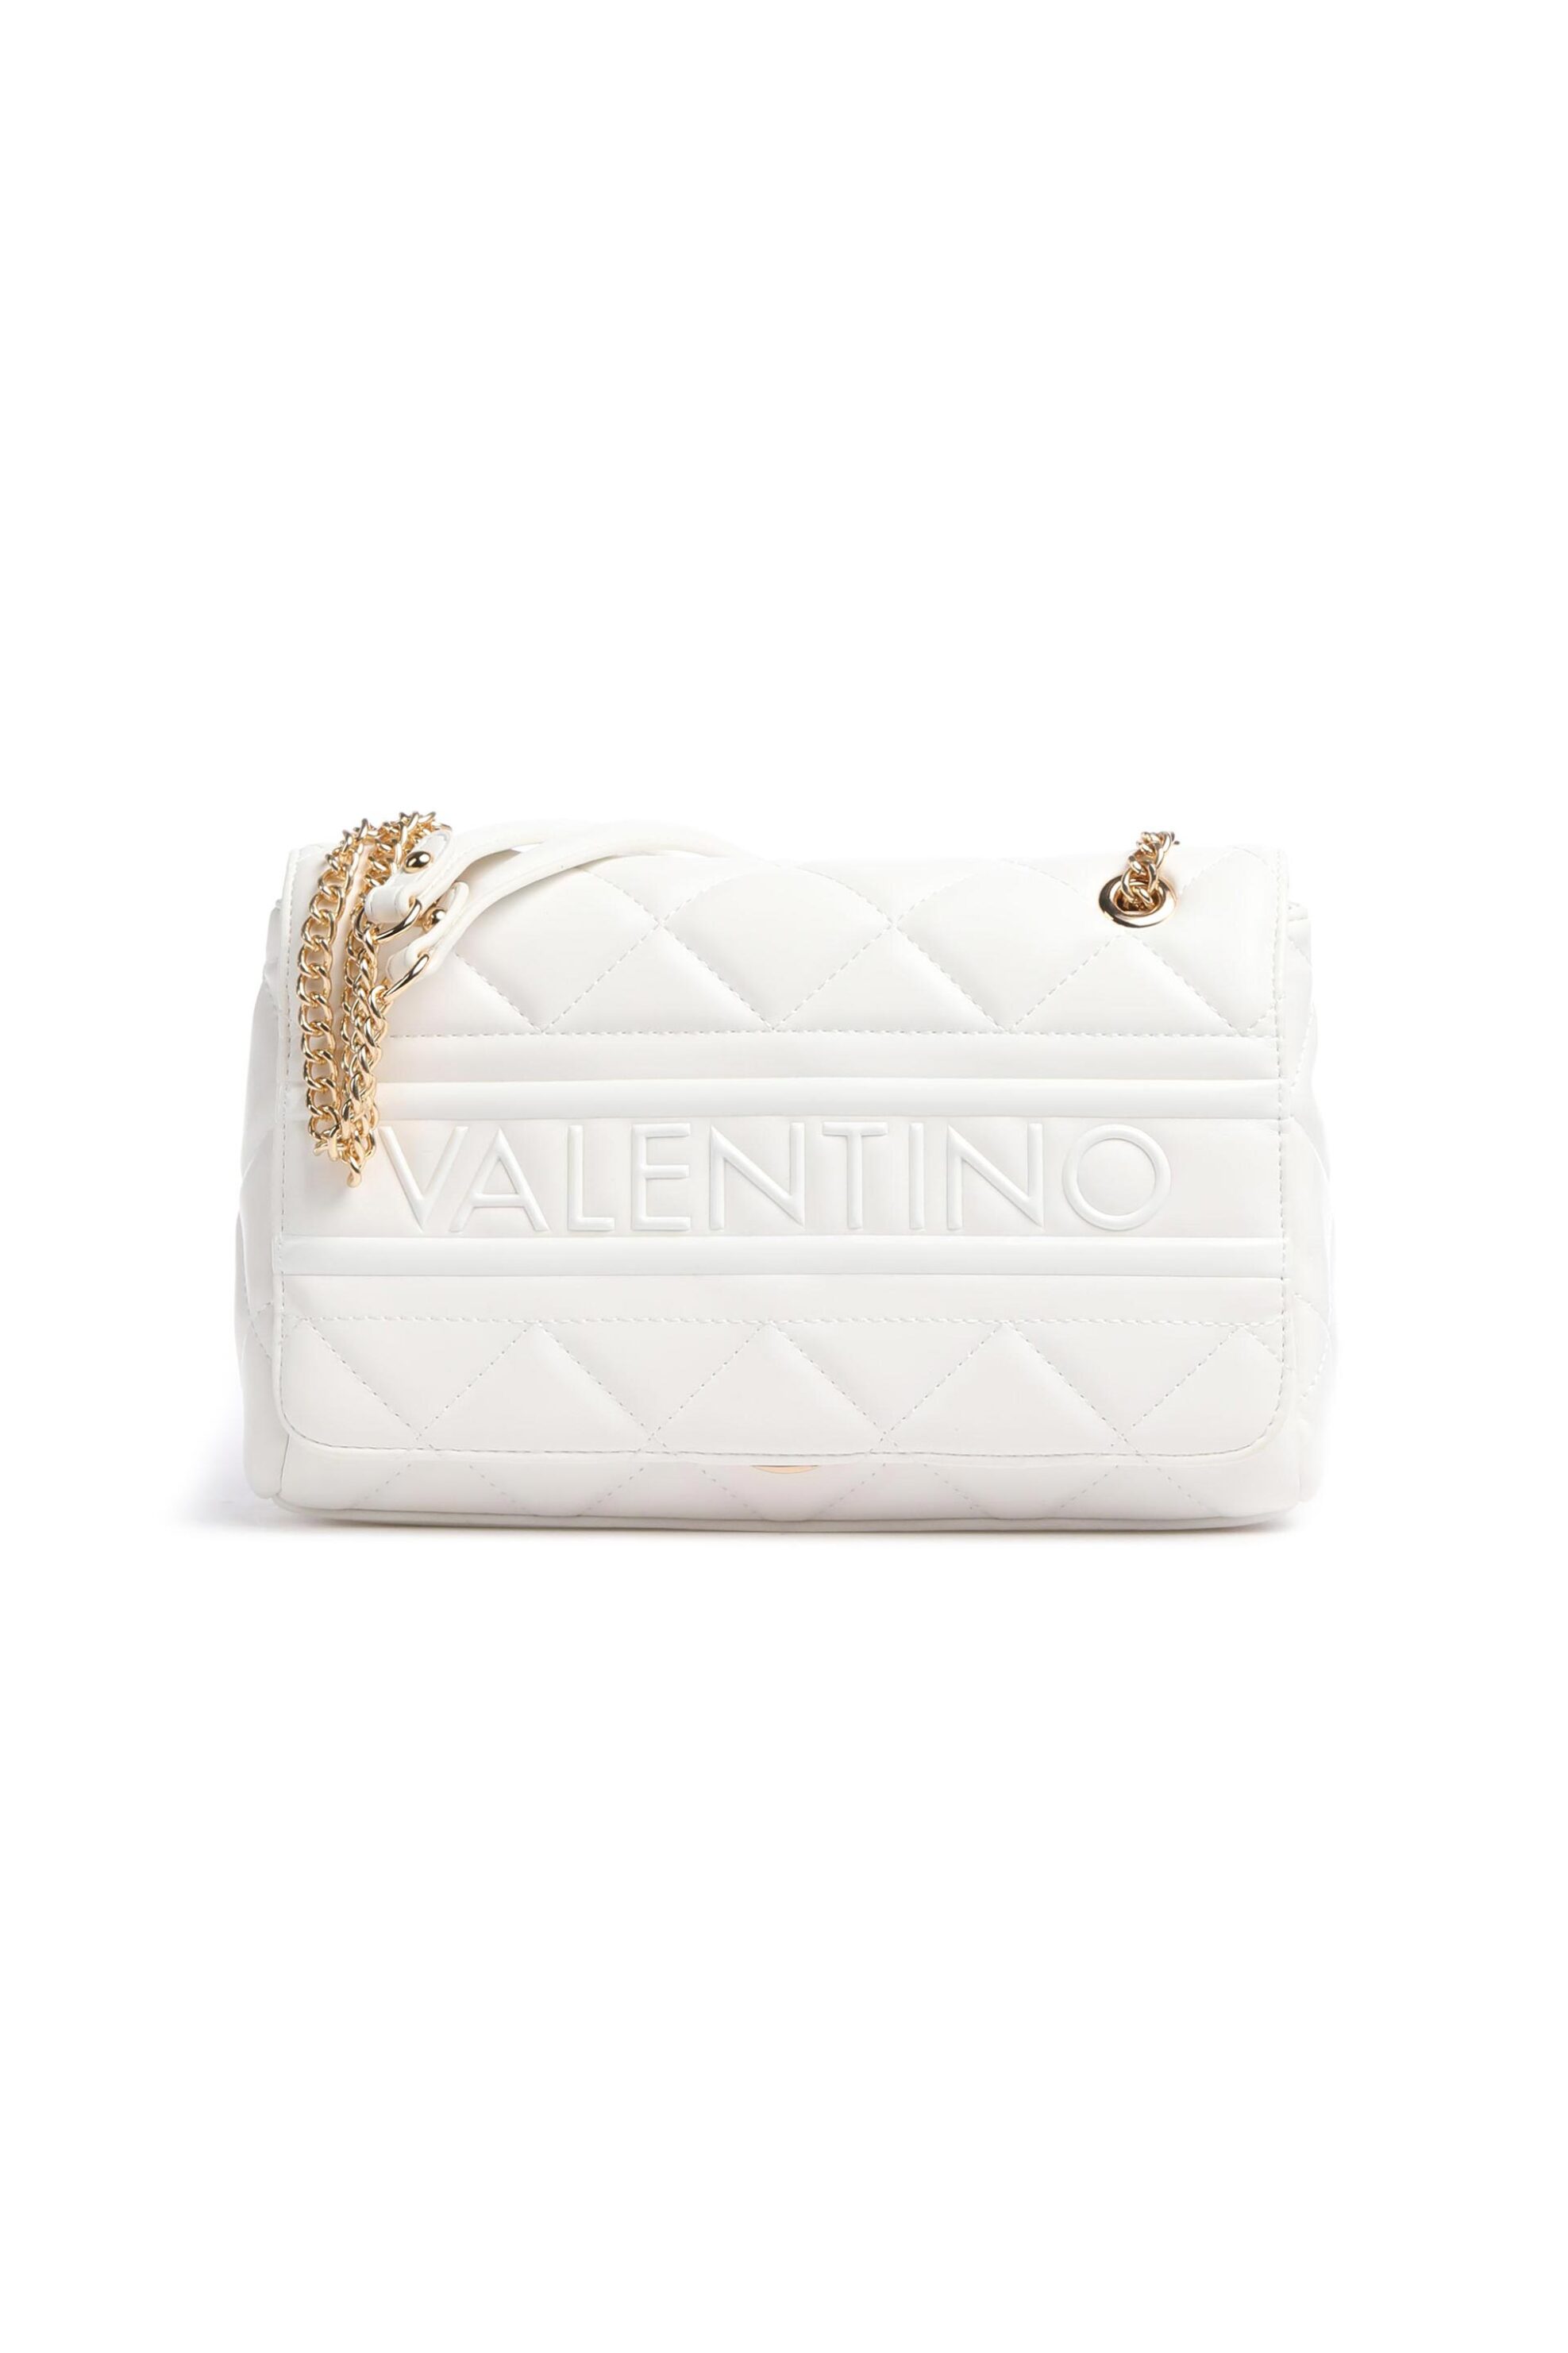 Γυναίκα > ΤΣΑΝΤΕΣ > Τσάντες Ώμου & Shopper Bags Valentino γυναικεία τσάντα ώμου με καπιτονέ σχέδιο μονόχρωμη "Ada" - 56KVBS51O05/ADA Λευκό